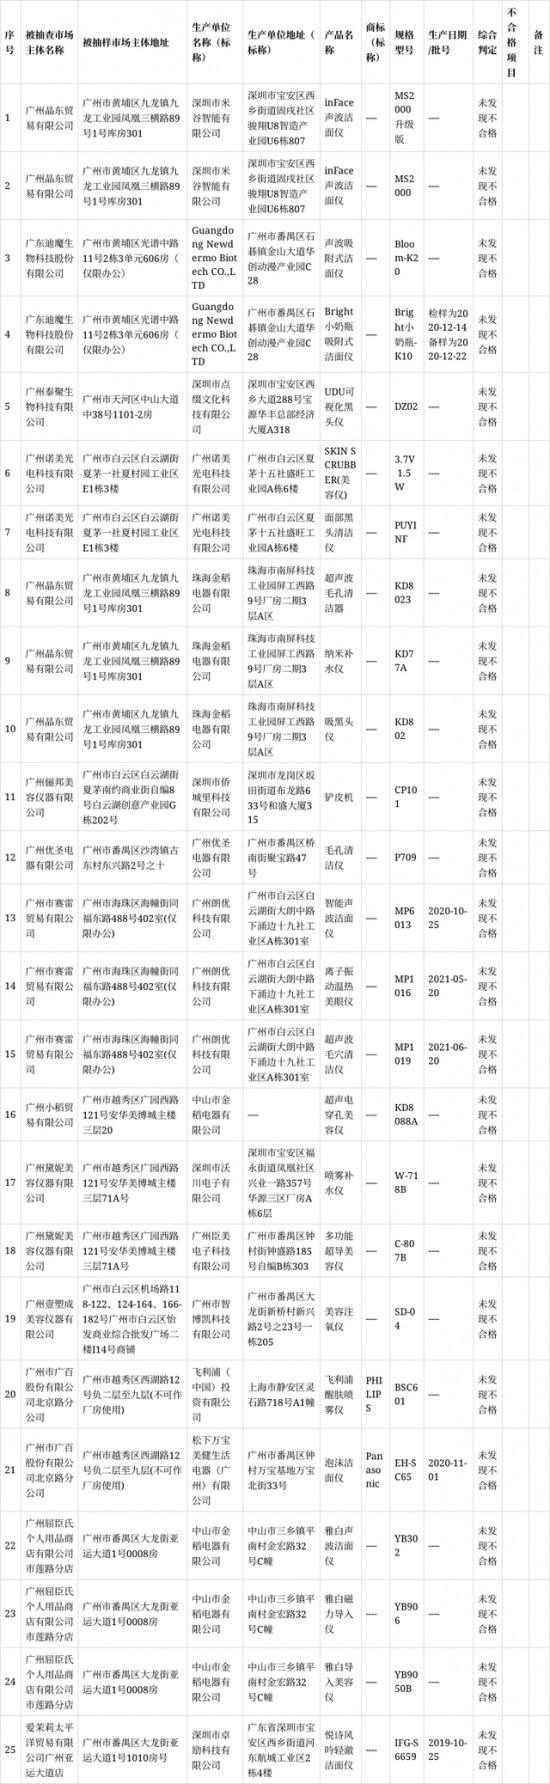 广州市市场监管局抽查电美容仪产品25批次 抽样产品全部合格